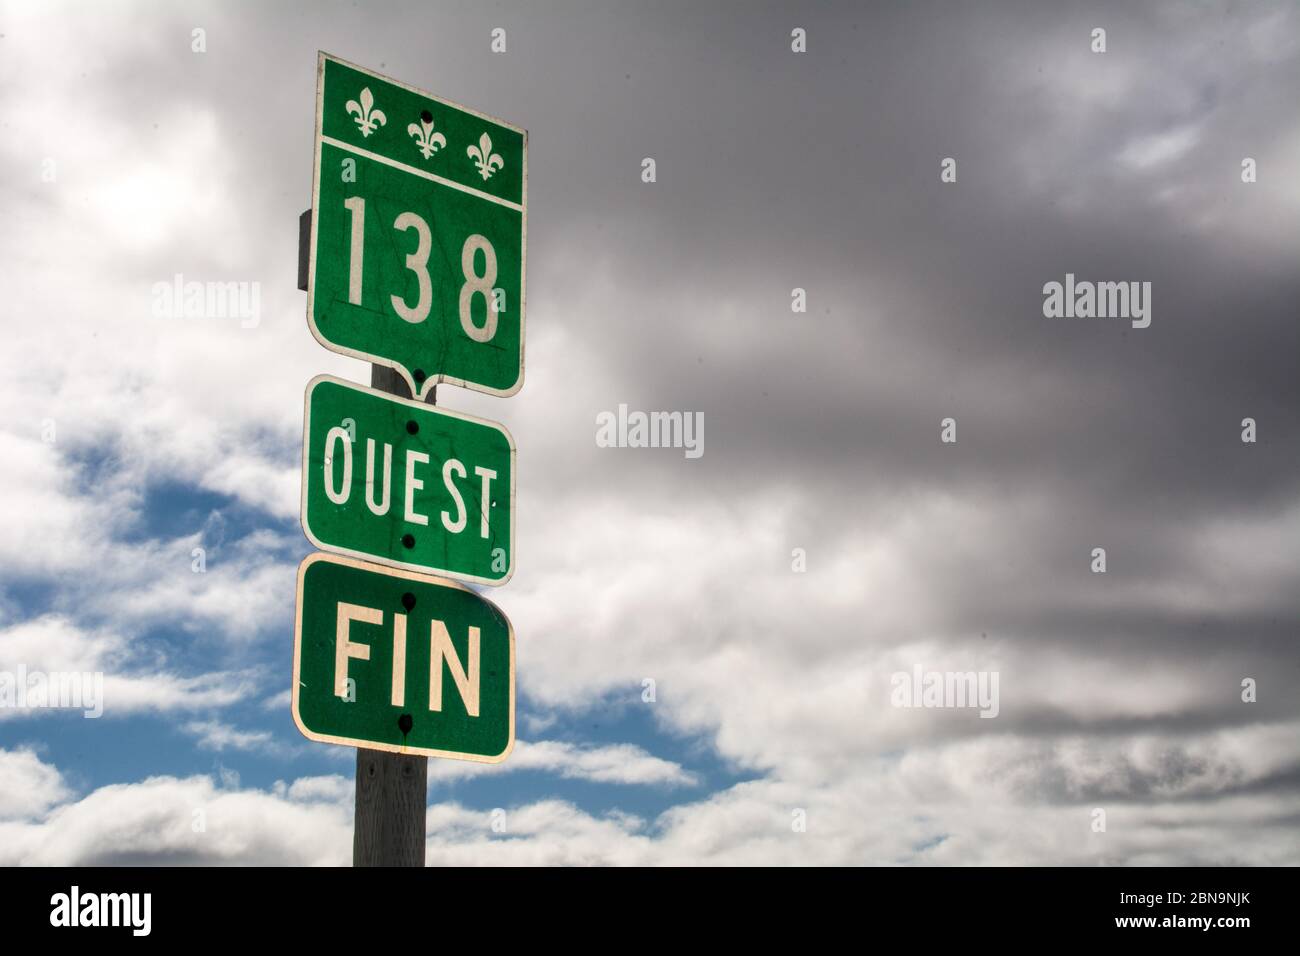 Un panneau routier de langue française au terminus de l'autoroute 138 dans le village d'Old fort, dans la région éloignée de la Basse-Côte-Nord, au Québec, Canada. Banque D'Images